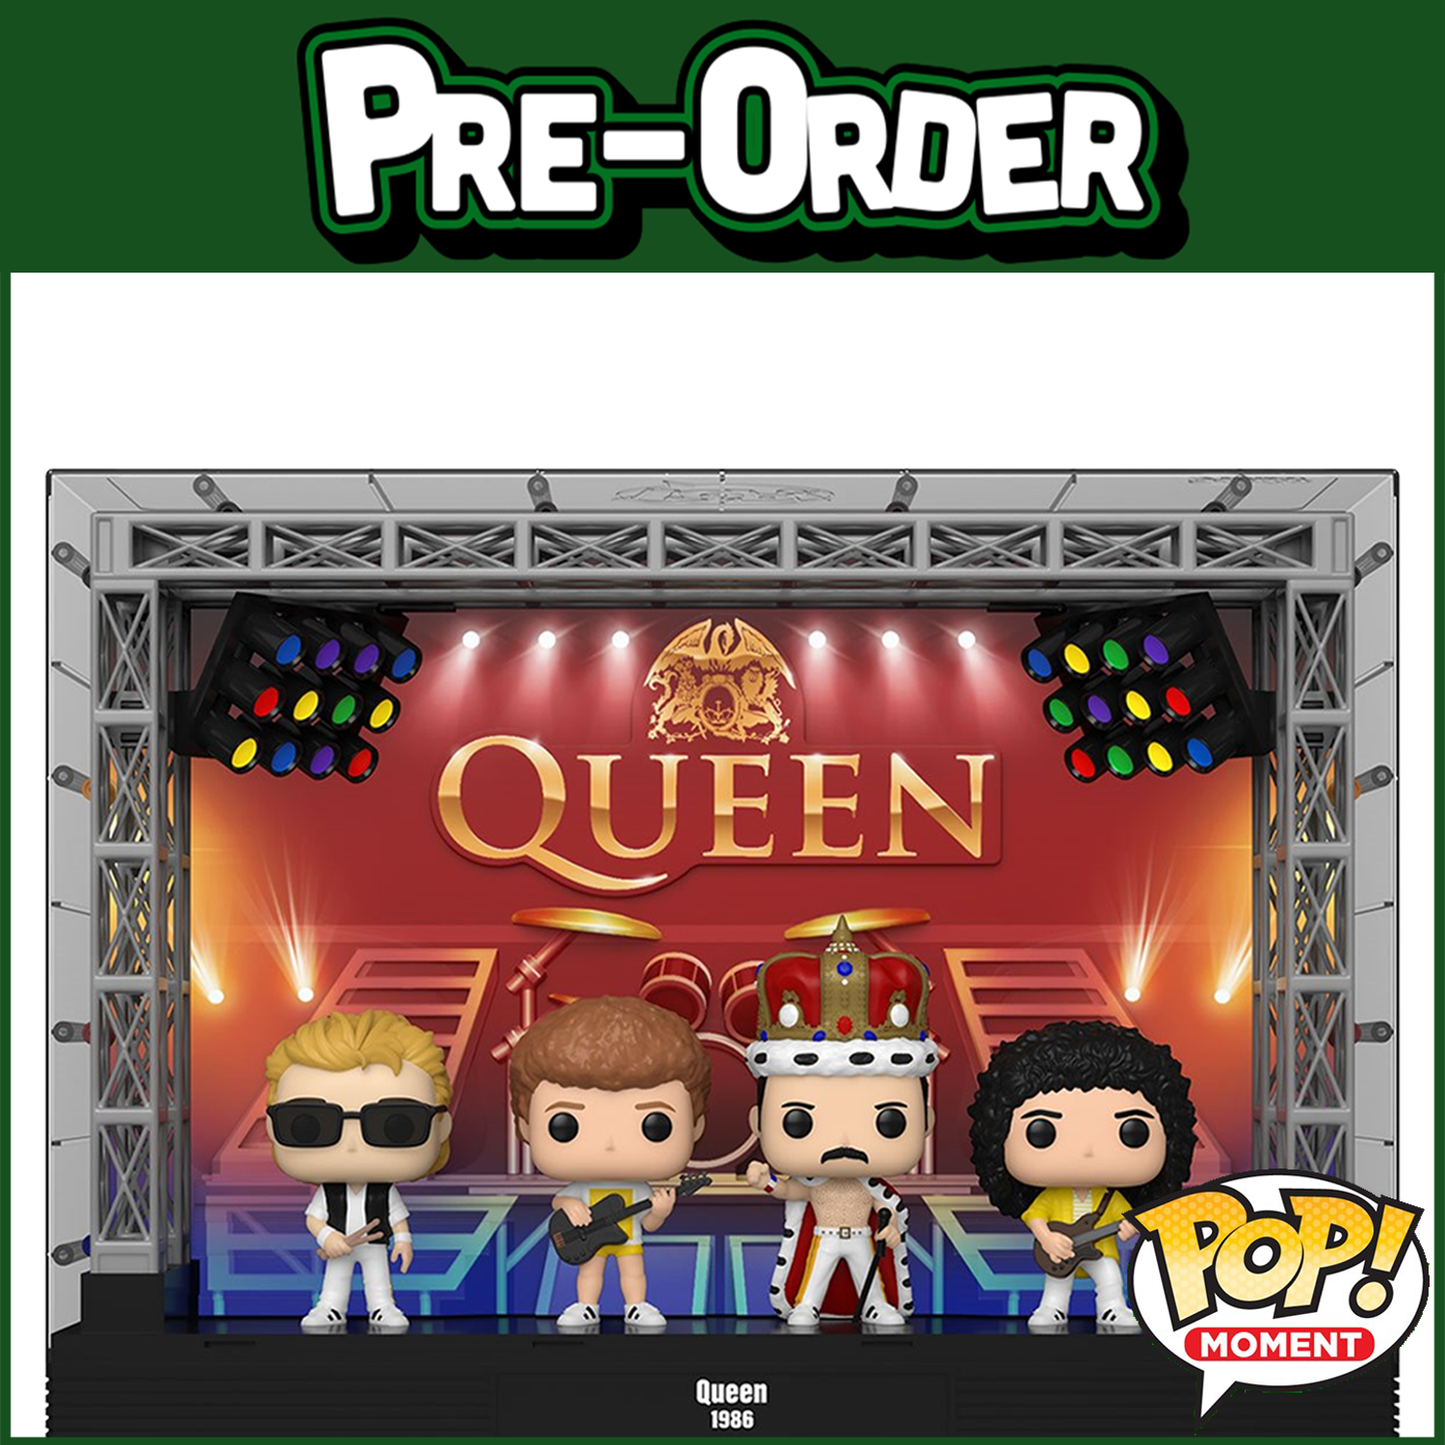 (PRE-ORDER) Funko POP! Moment Deluxe: Queen - Wembley Stadium #06